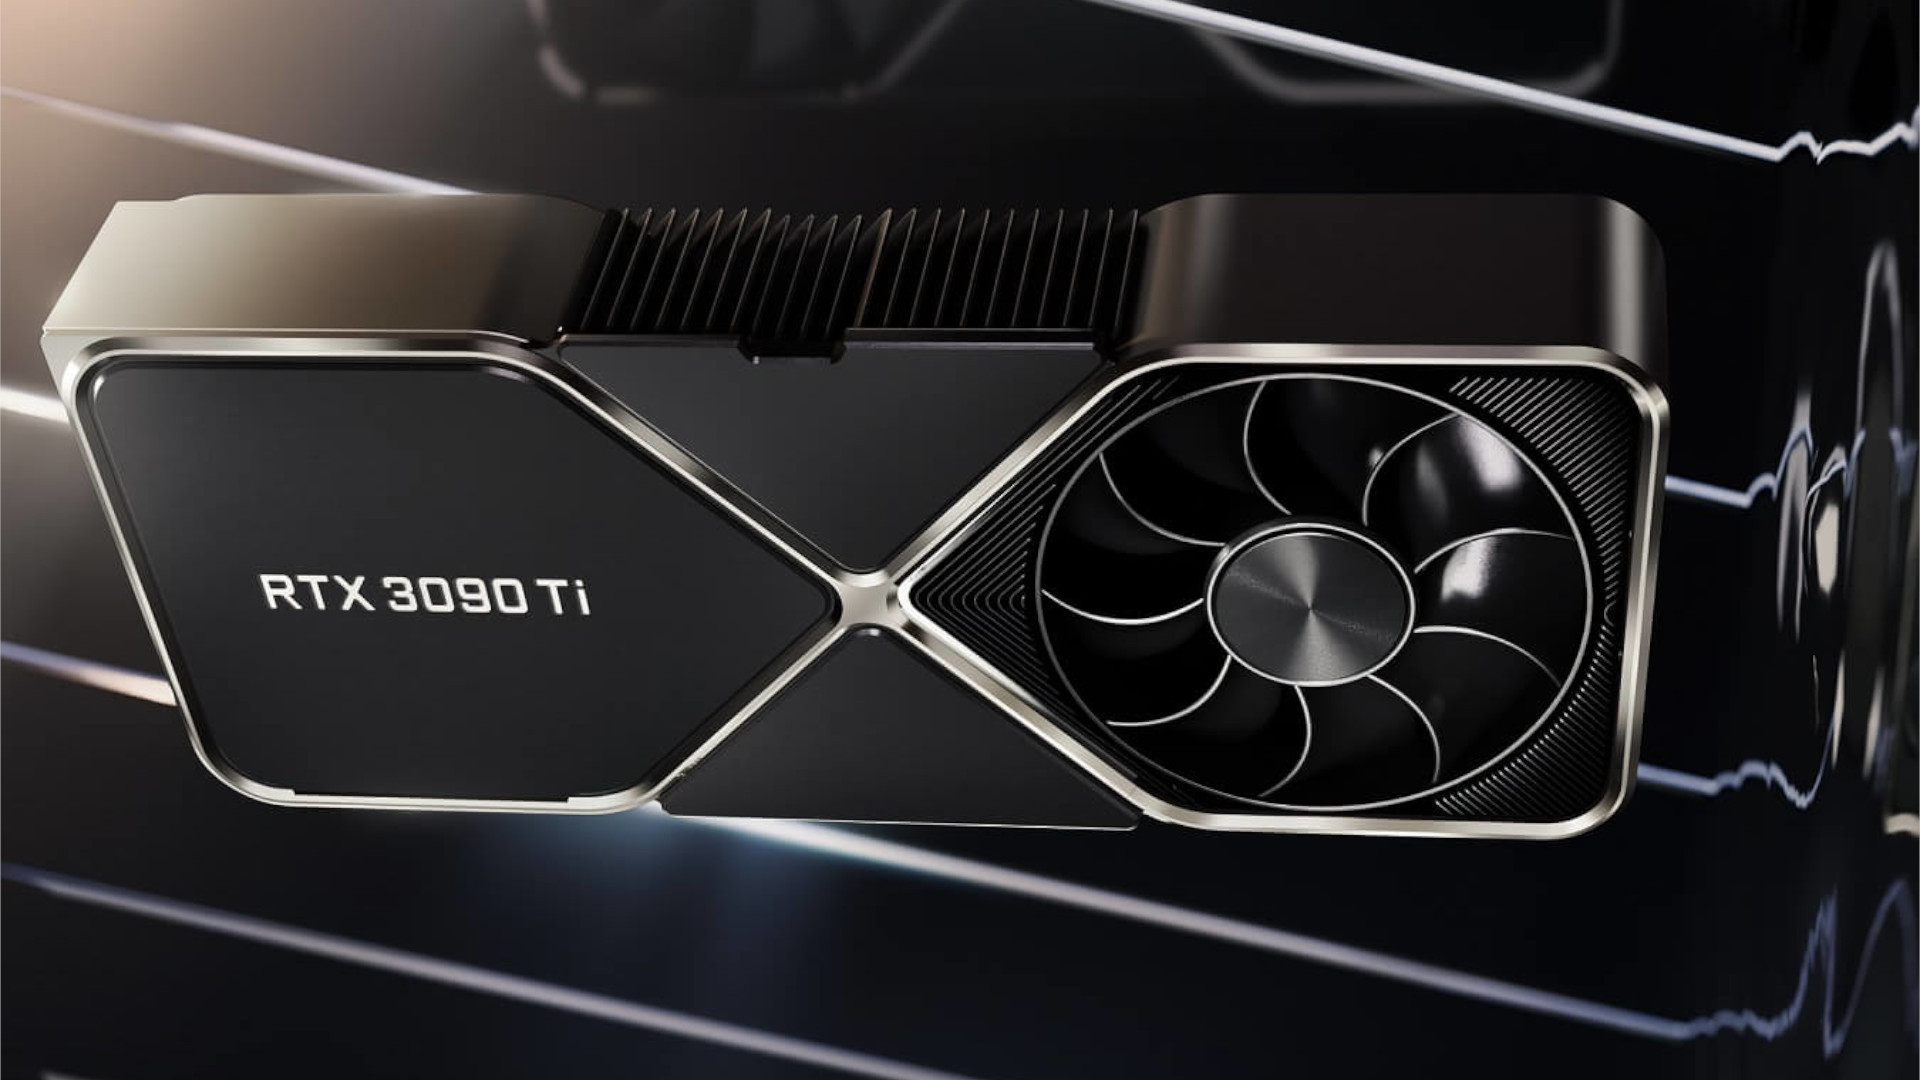 Nvidia GeForce RTX 3090 Ti GPU review round up